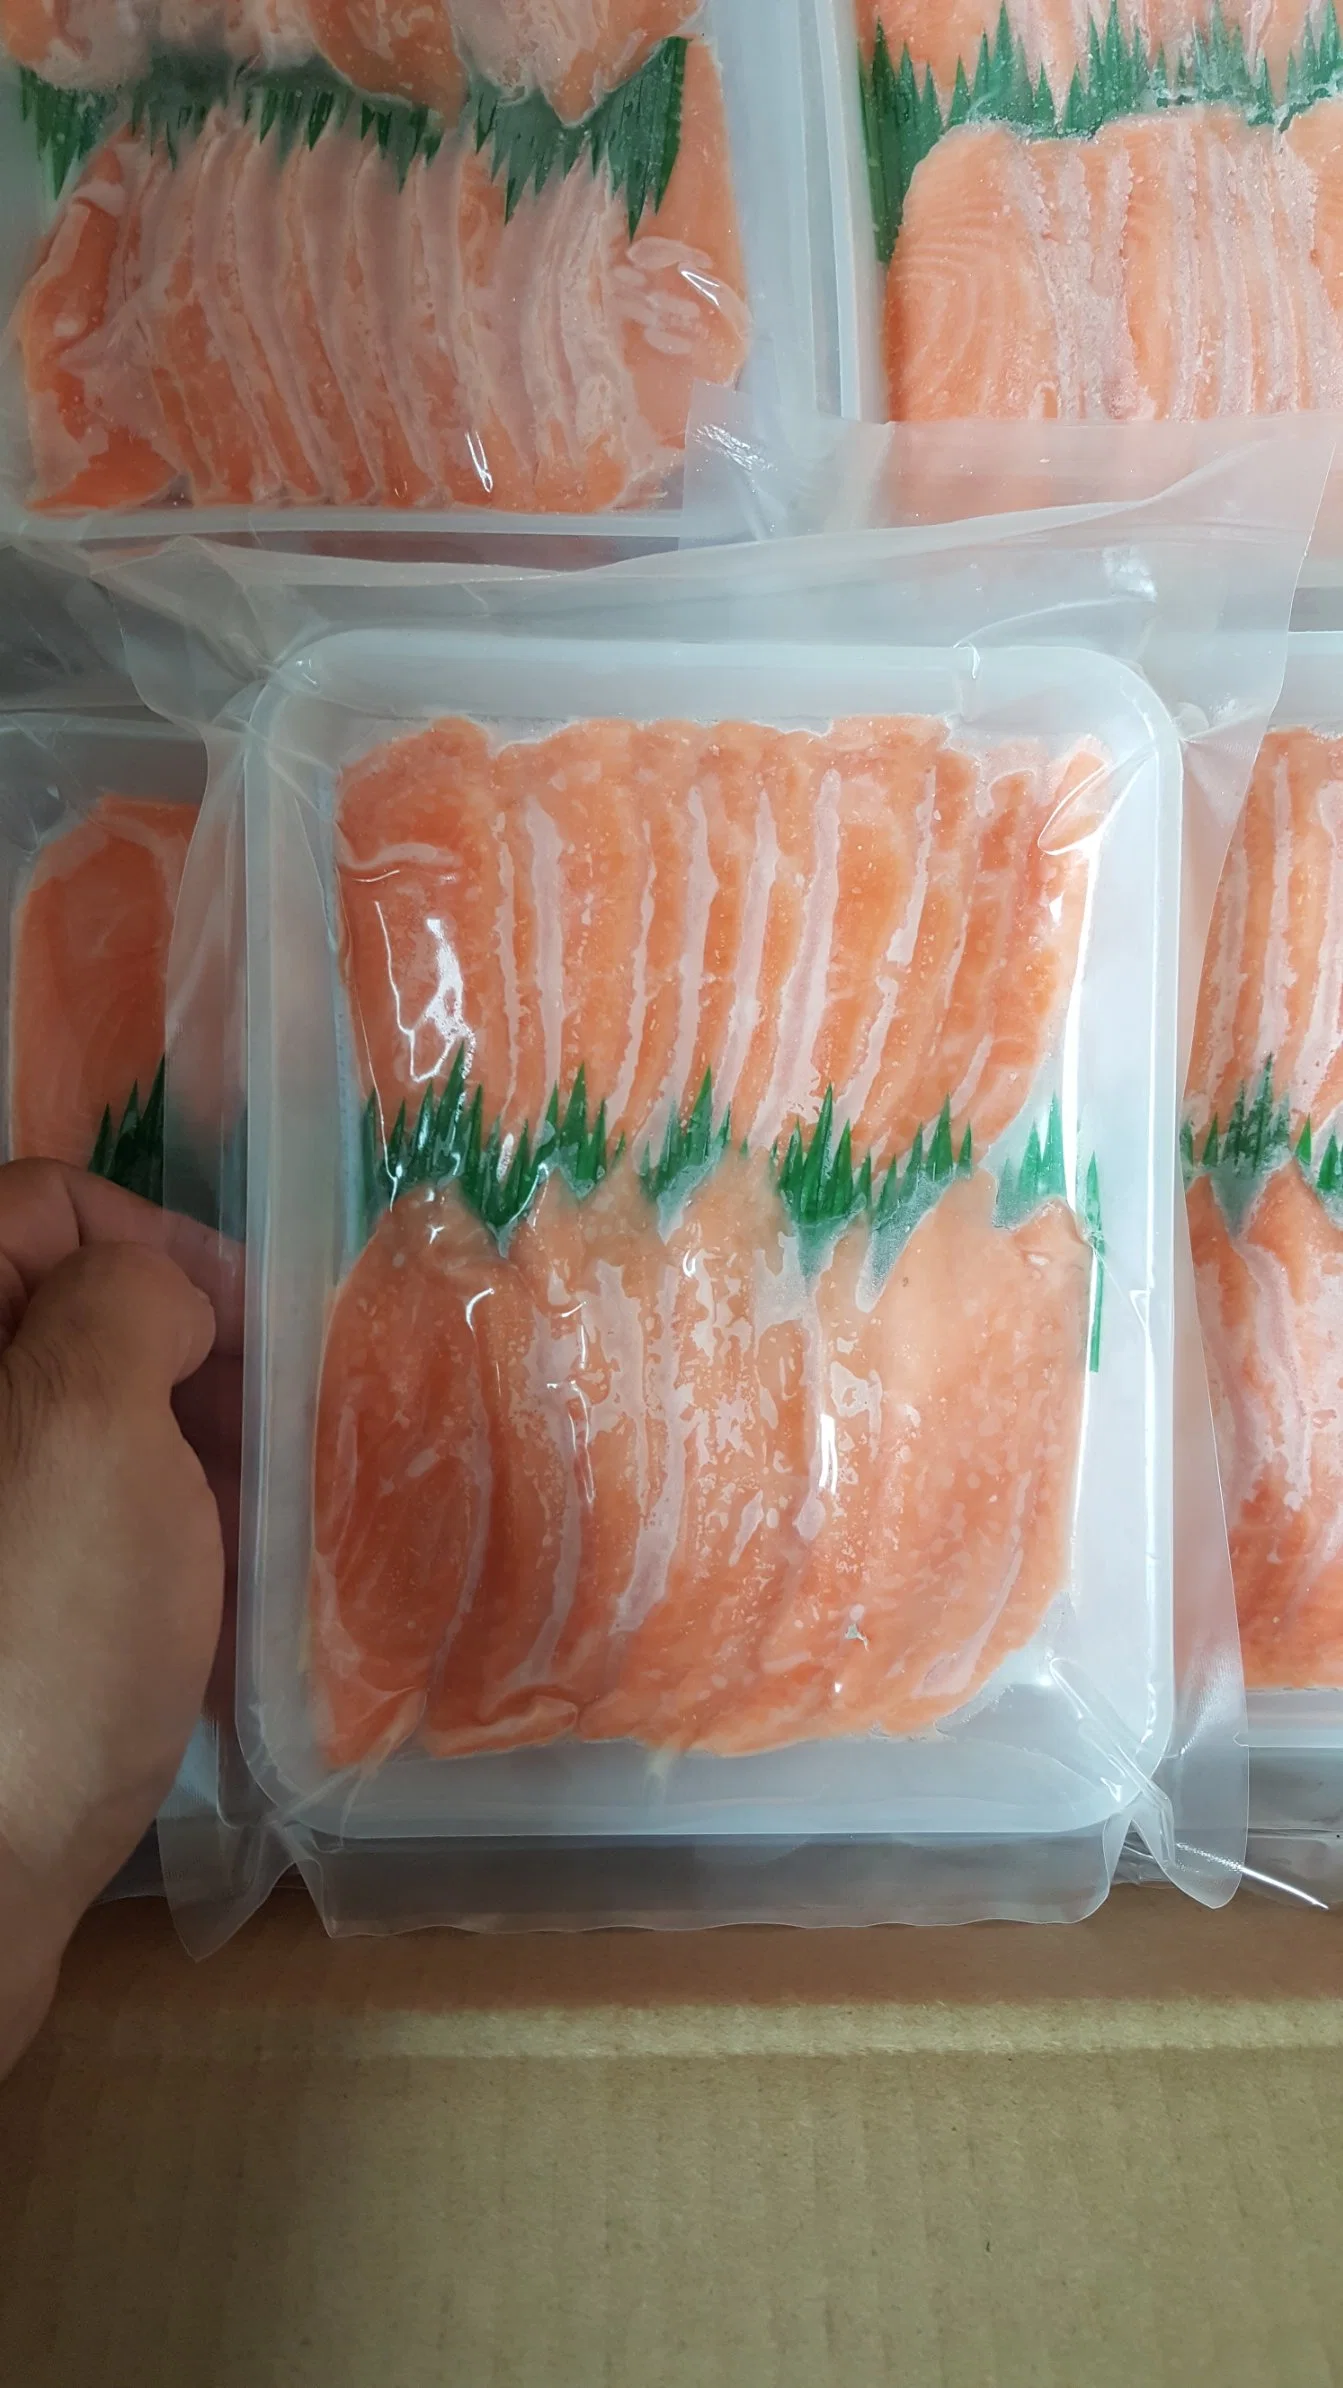 Corte de salmón de sushi, comida Halal. Salmón congelado.